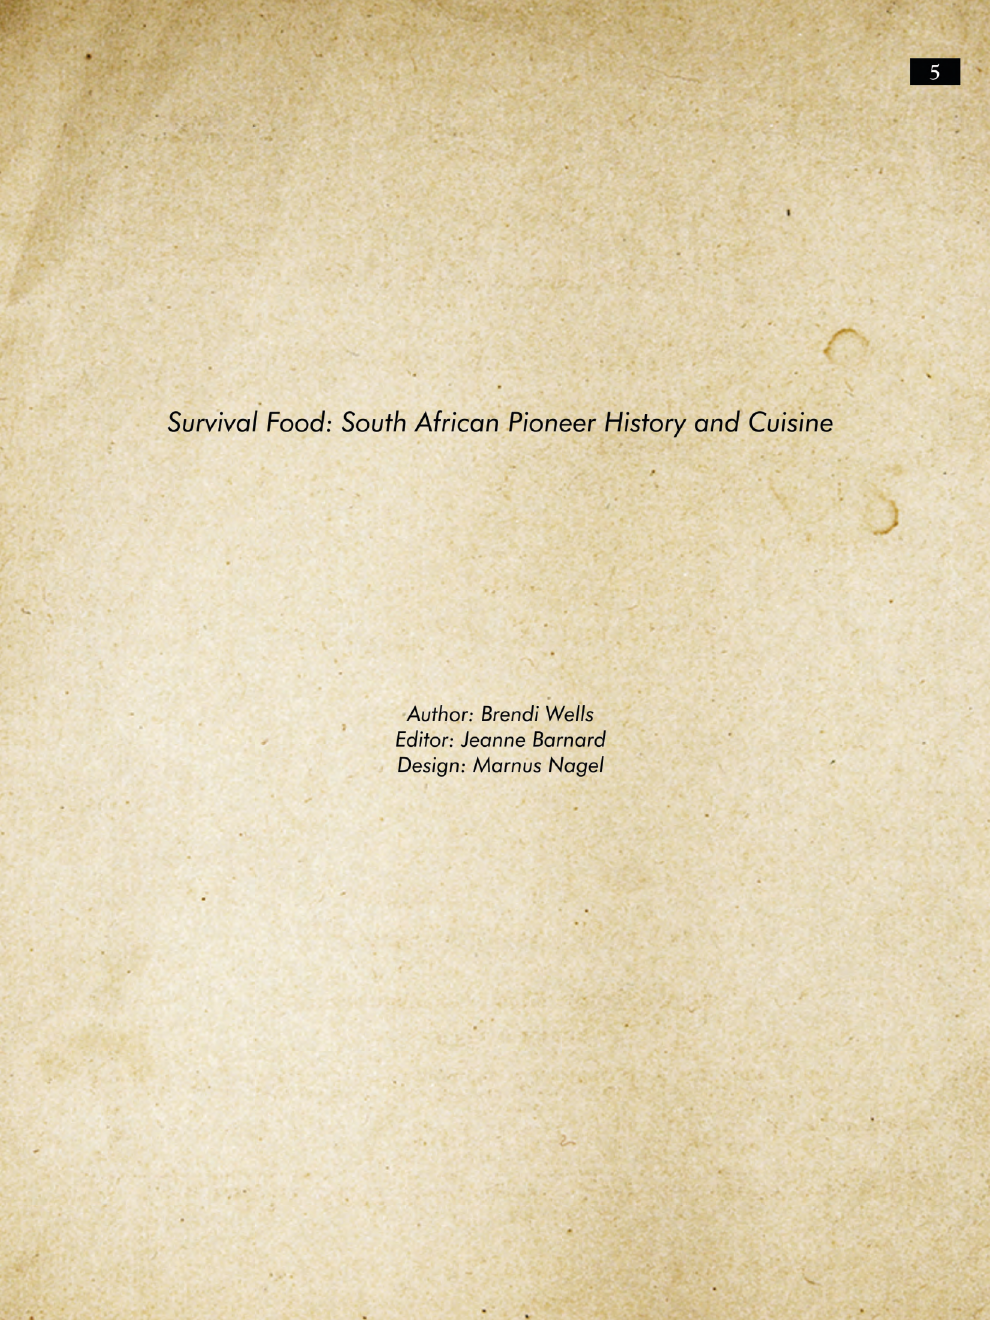 Survival Food: South African Pioneer Cuisine